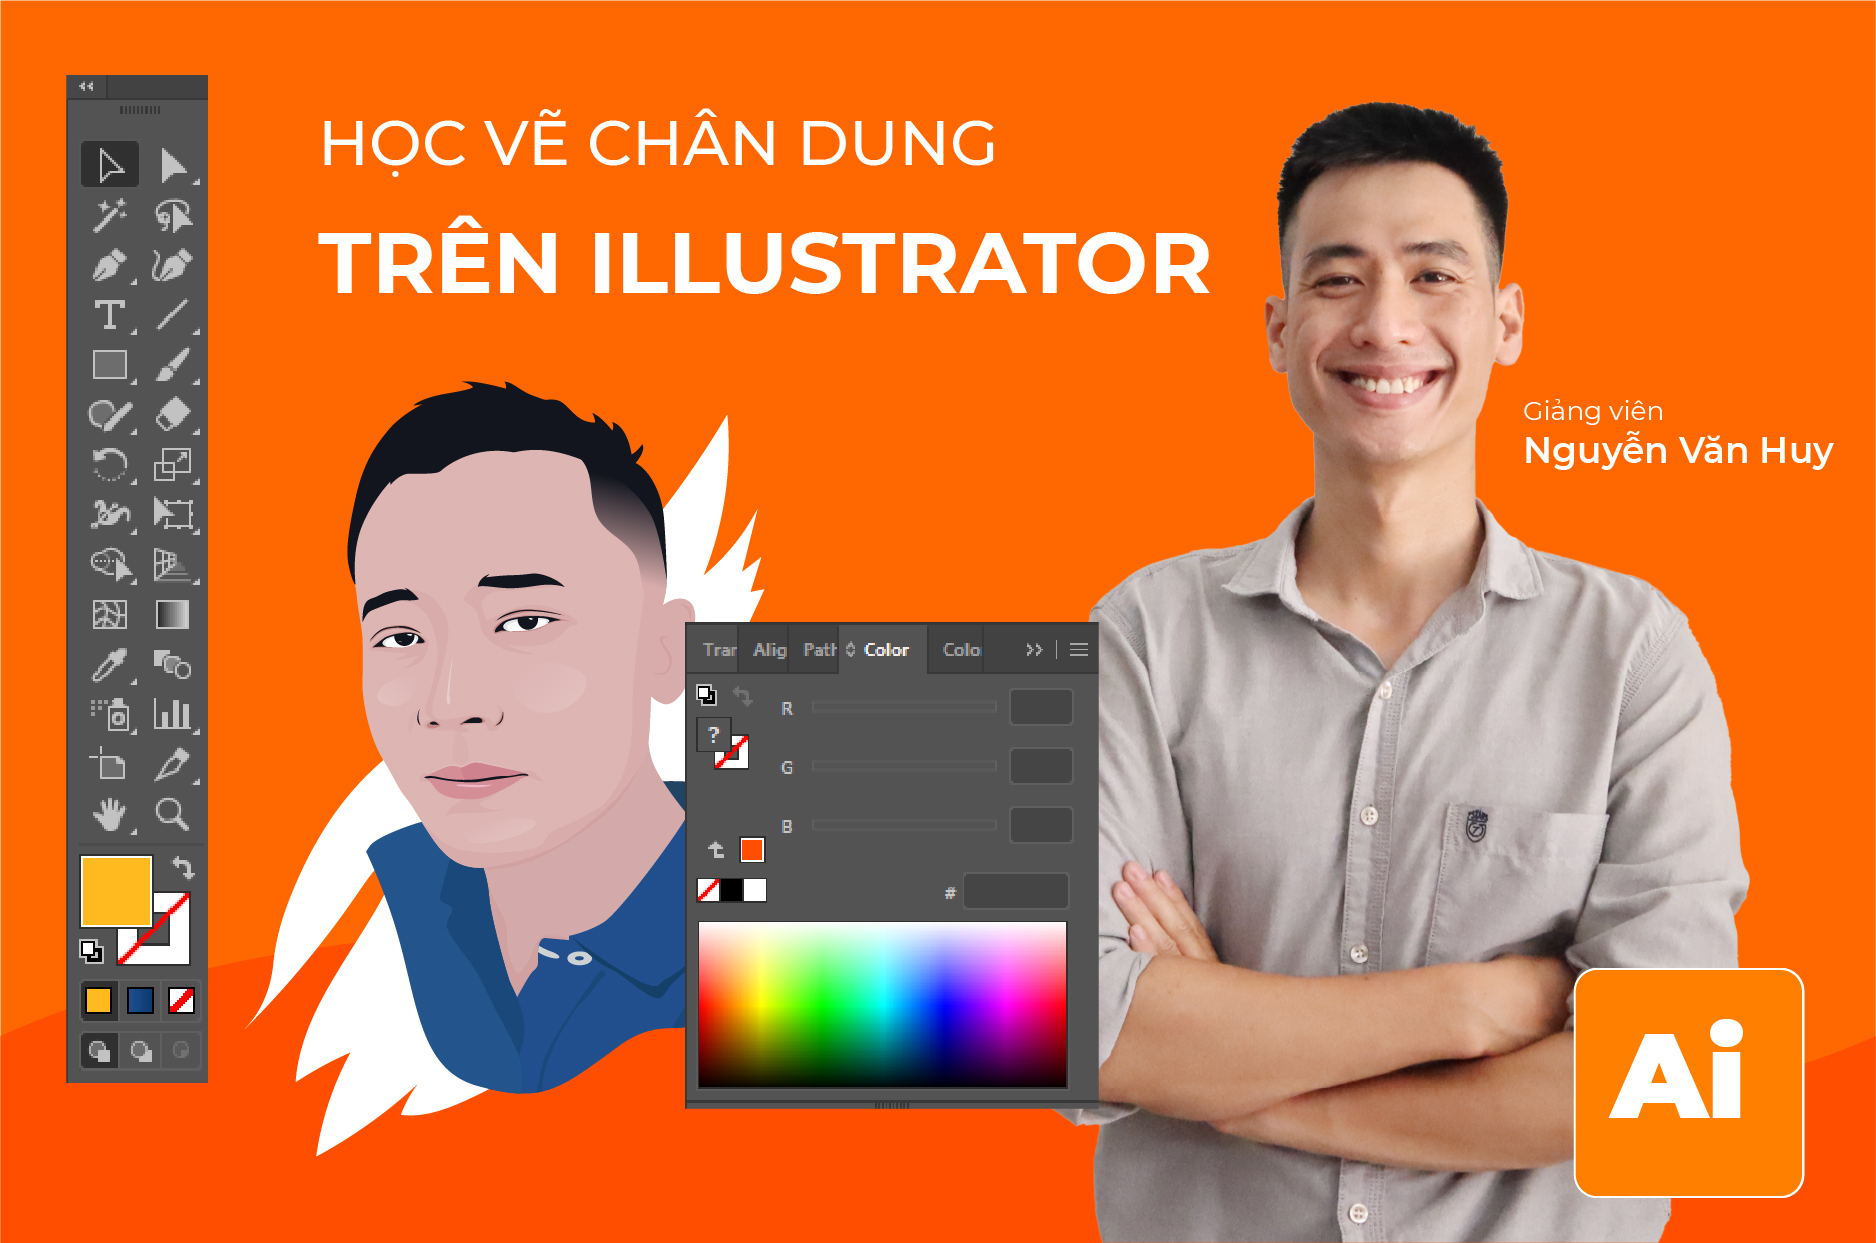 Với Adobe Illustrator, bạn có thể trở thành một nghệ sĩ chân dung chuyên nghiệp. Vẽ chân dung bằng Illustrator sẽ giúp bạn tạo ra các bức tranh sống động và chân thực. Điều này sẽ khiến cho người xem cảm thấy như đang nhìn thấy chính họ trên bức tranh. Hãy xem hình ảnh để cảm nhận được điều này.